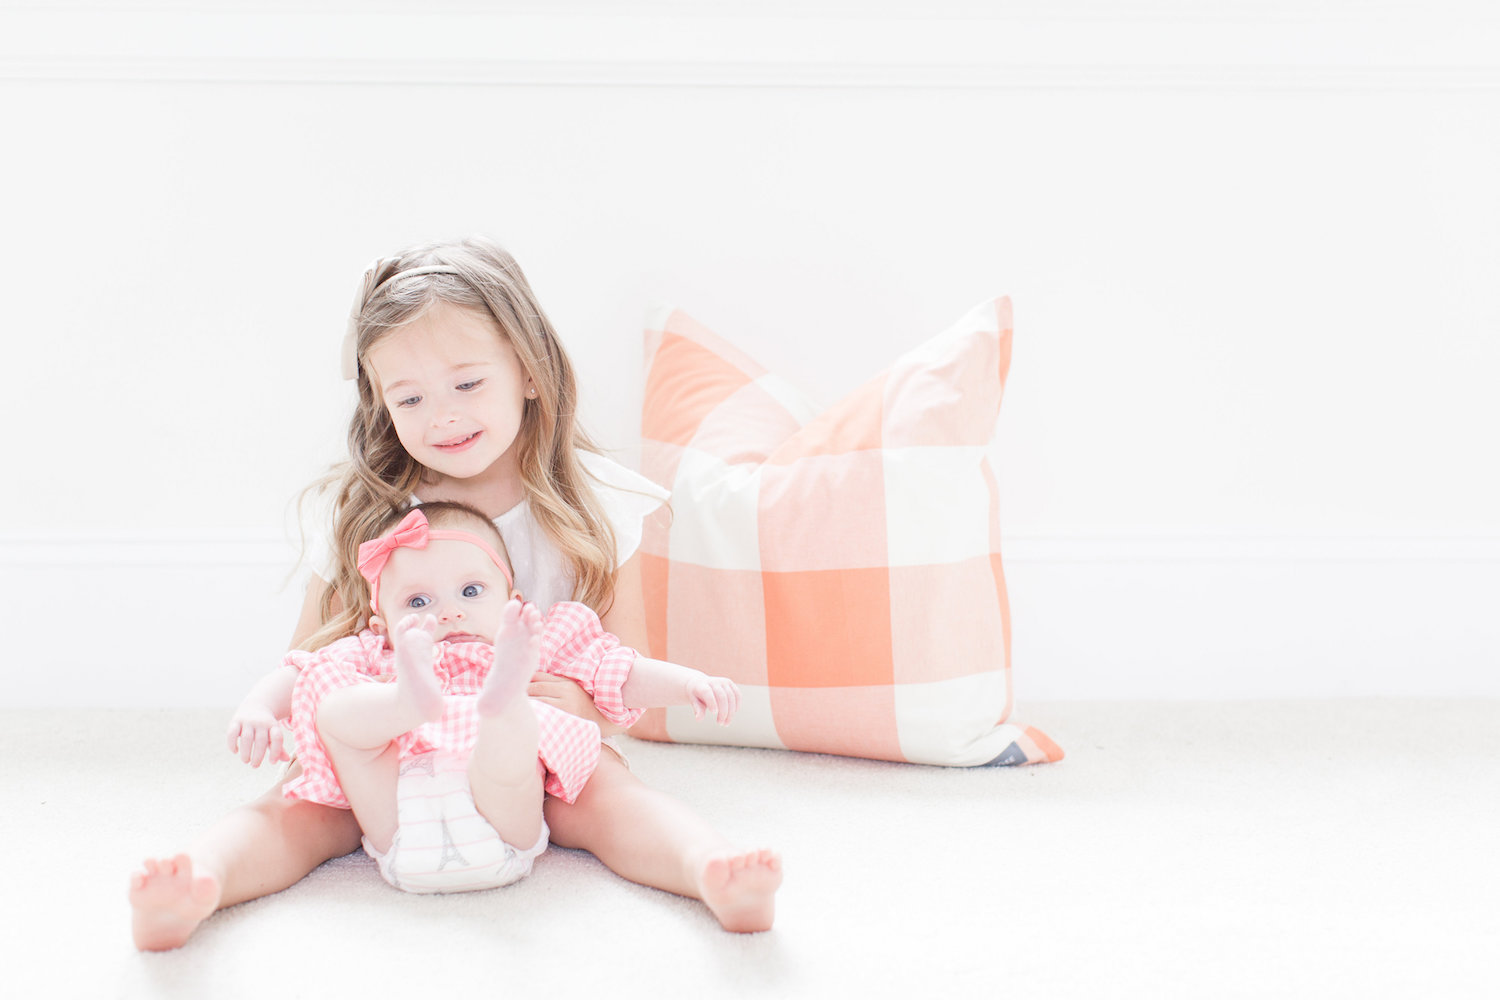 H&M Kids Spring Fashion Monika Hibbs baby girl gingham dress